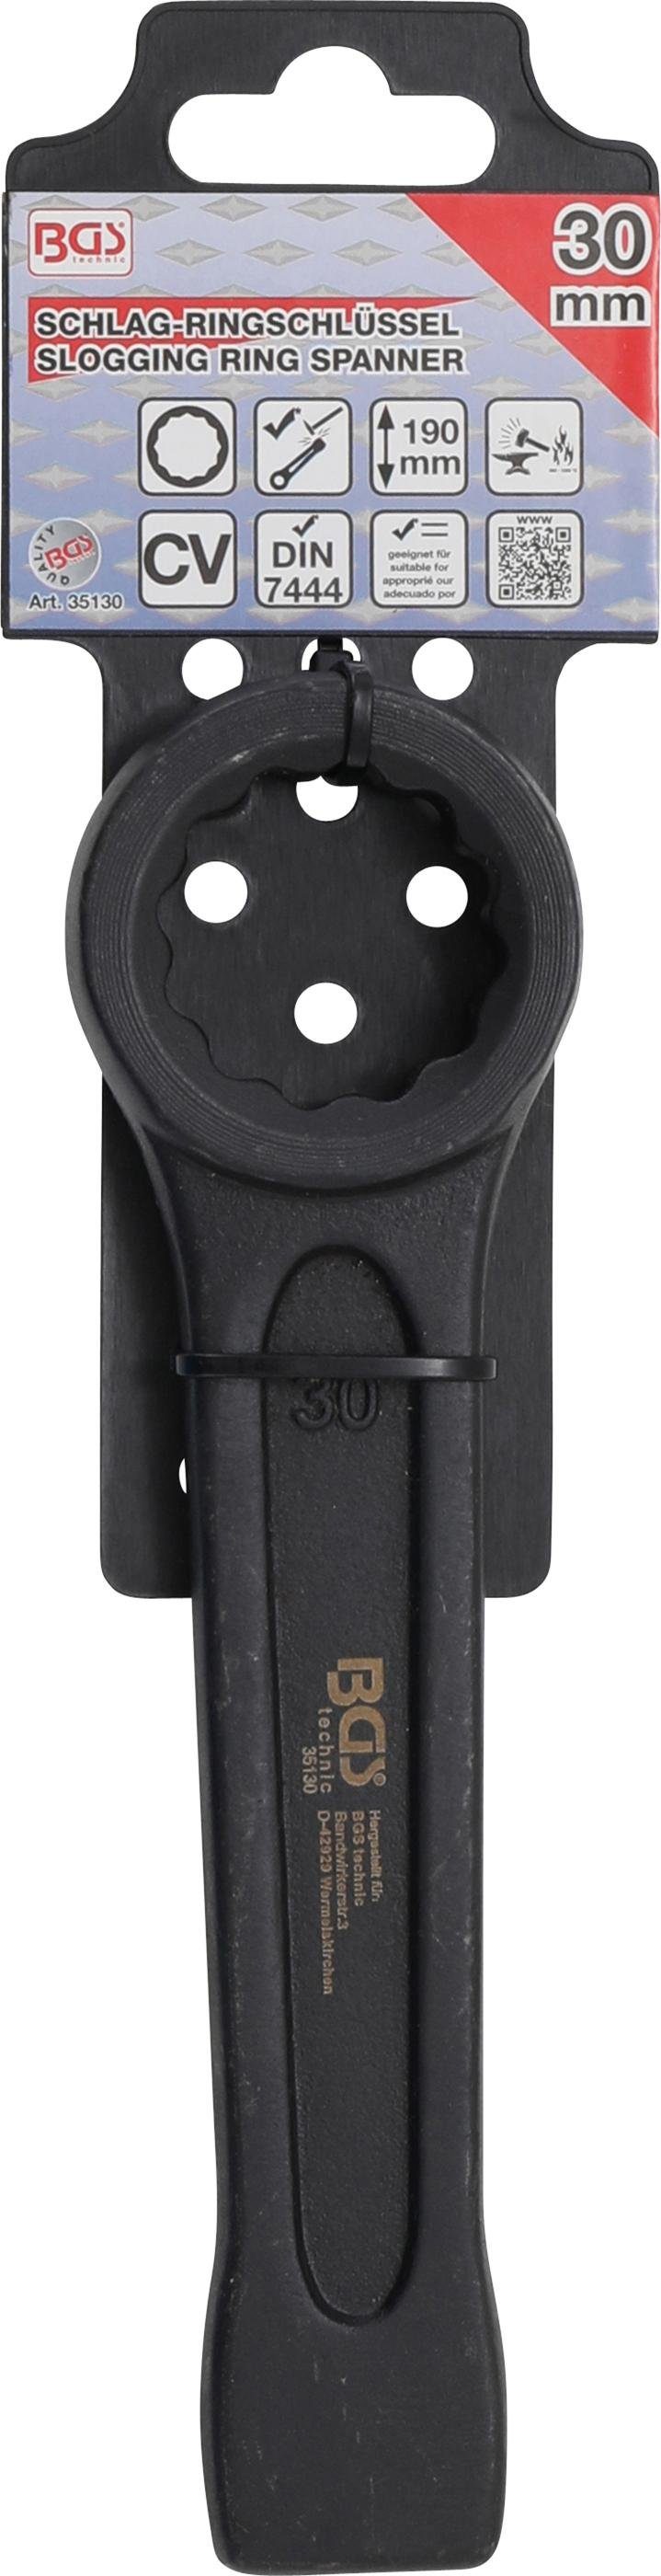 SW mm 30 Ringschlüssel BGS Schlag-Ringschlüssel, technic